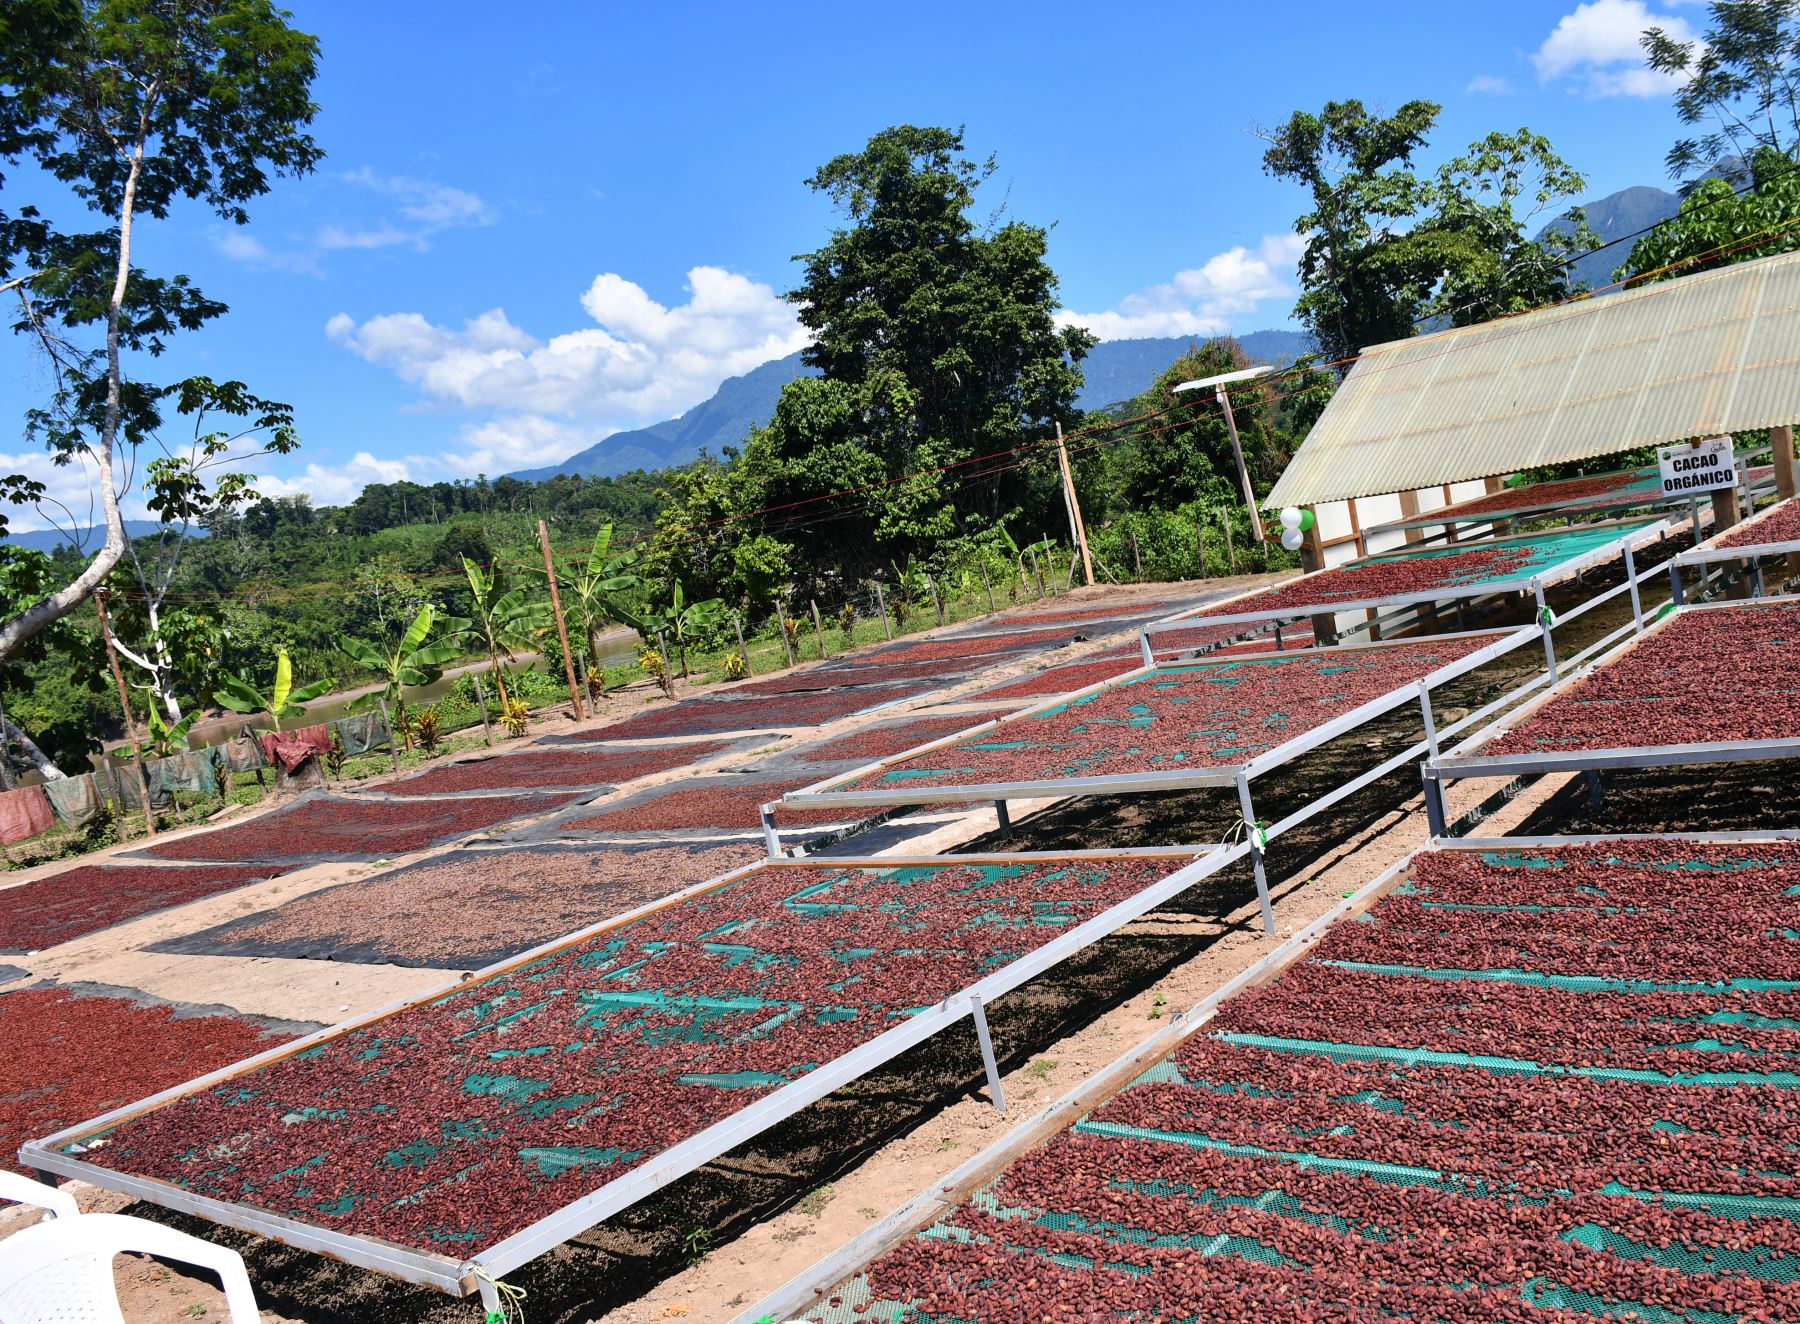 El cacao orgánico es el cultivo emblema y motor que impulsa el desarrollo económico del distrito de Pachiza, región San Martín. Foto: Jorge Quevedo